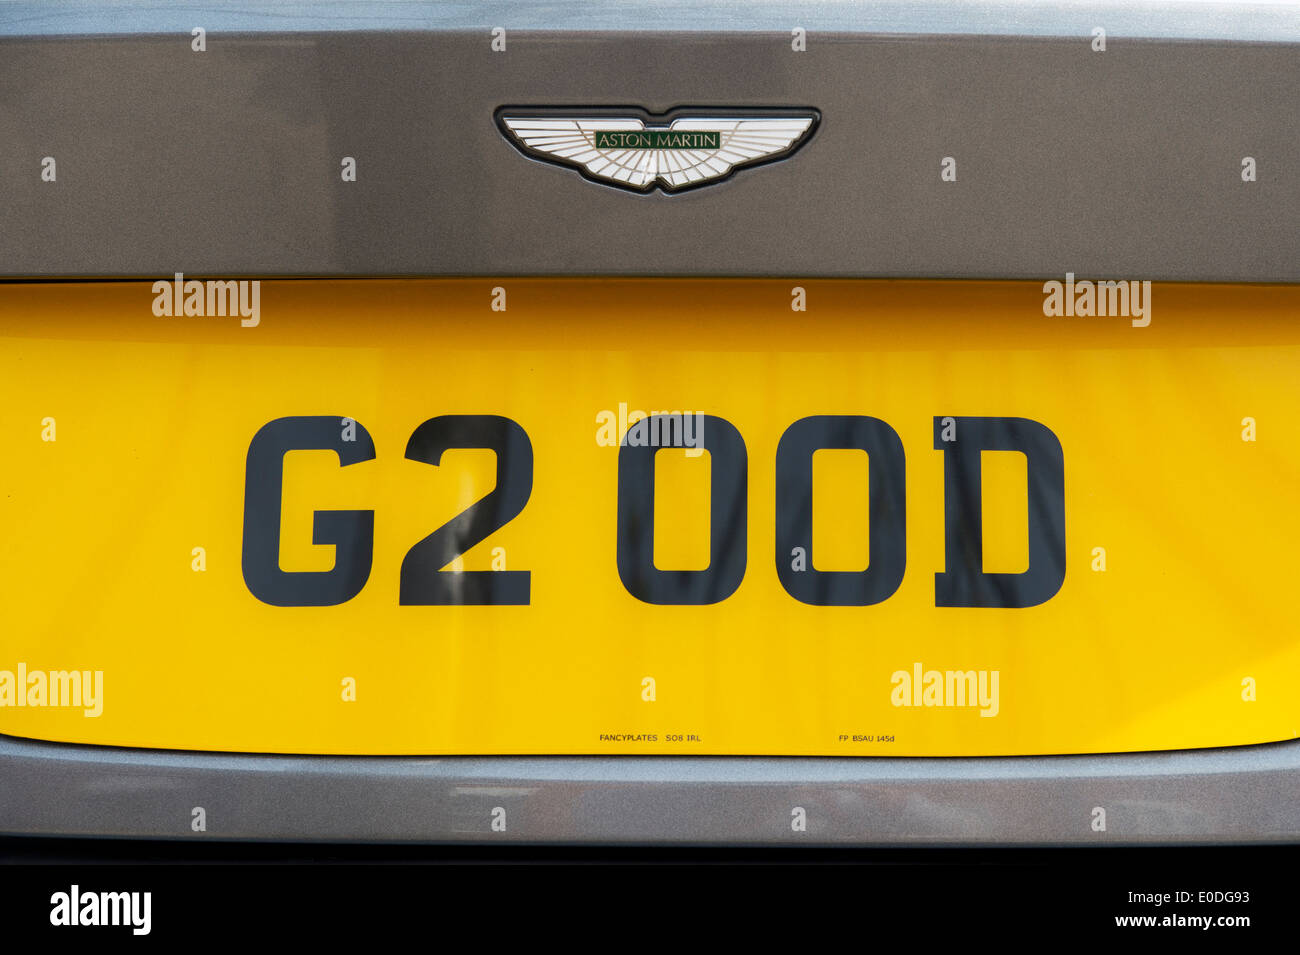 Aston Martin DB9 G2 OOD Nummernschild Stockfoto